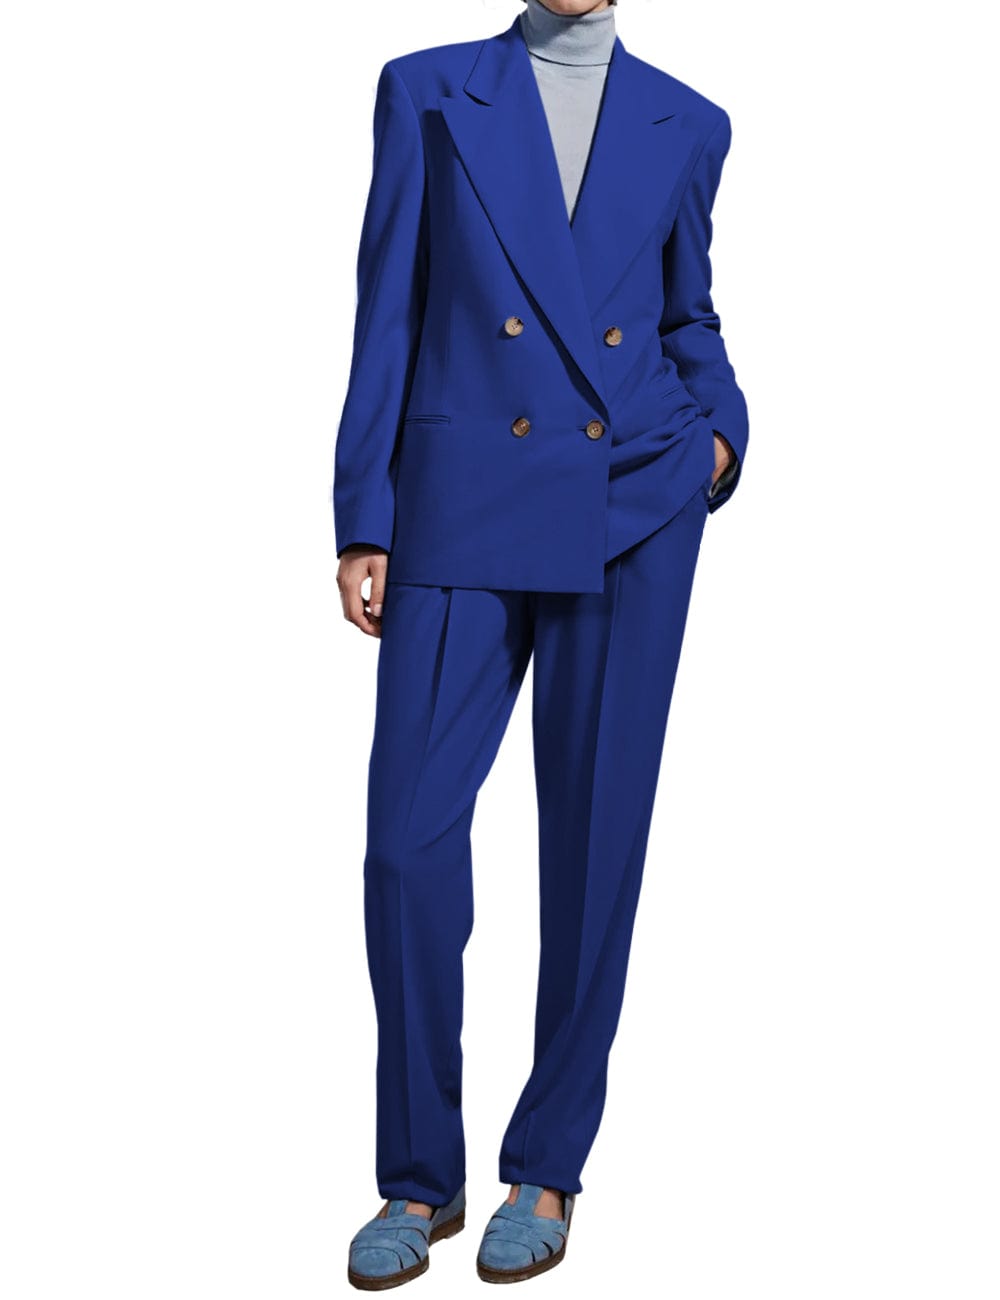 solovedress 2 Piece Peak lapel Business Suit For Women